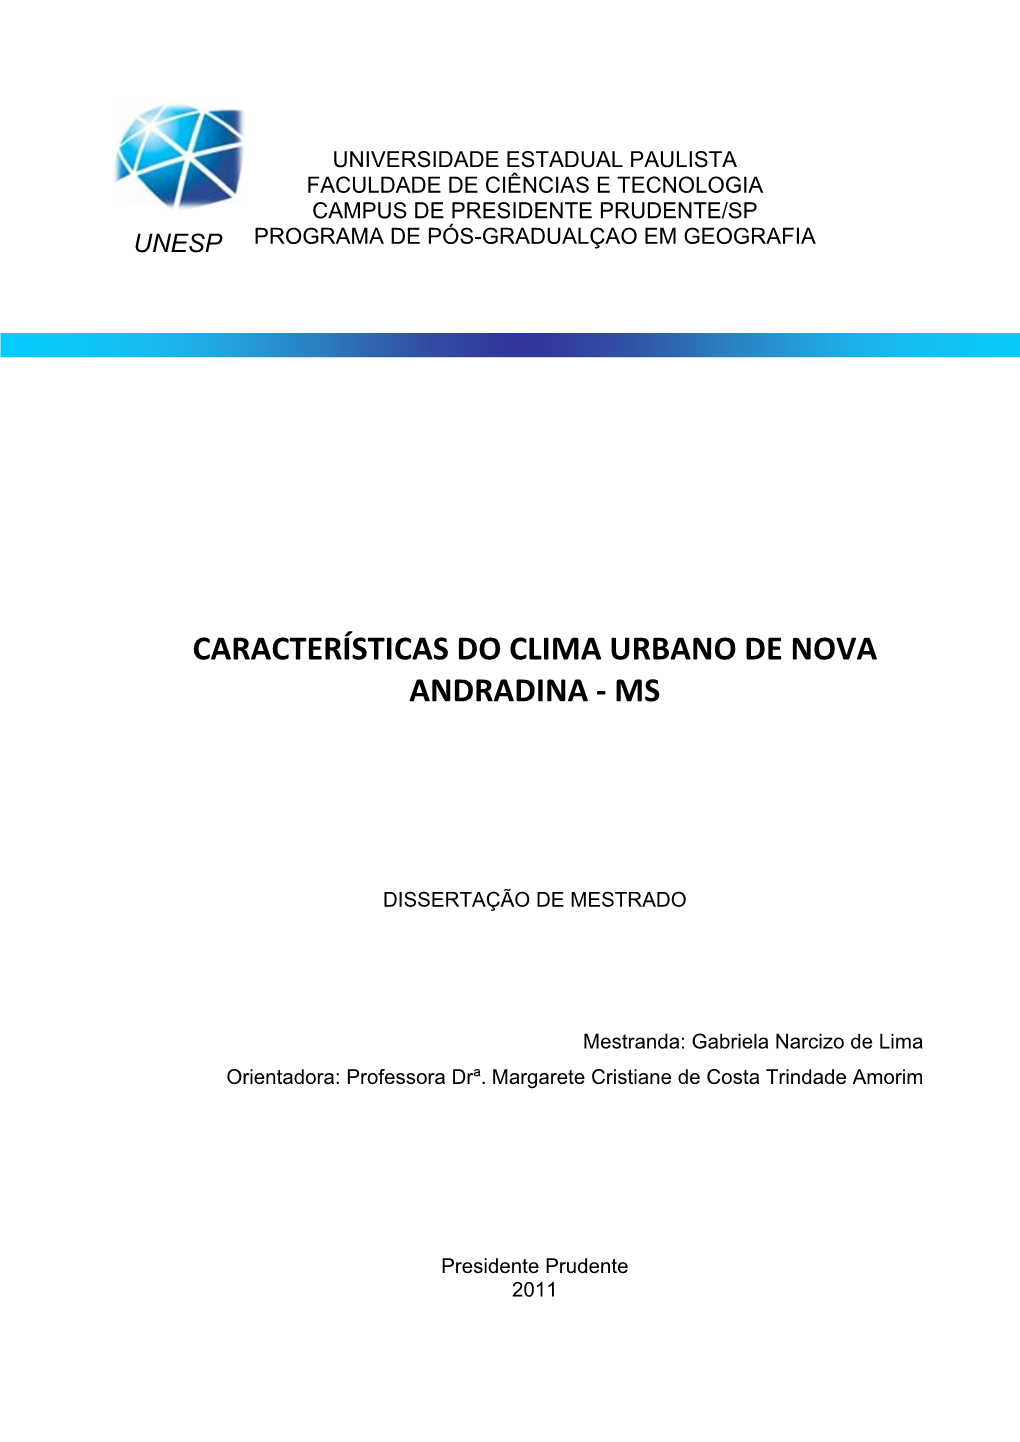 Características Do Clima Urbano De Nova Andradina - Ms